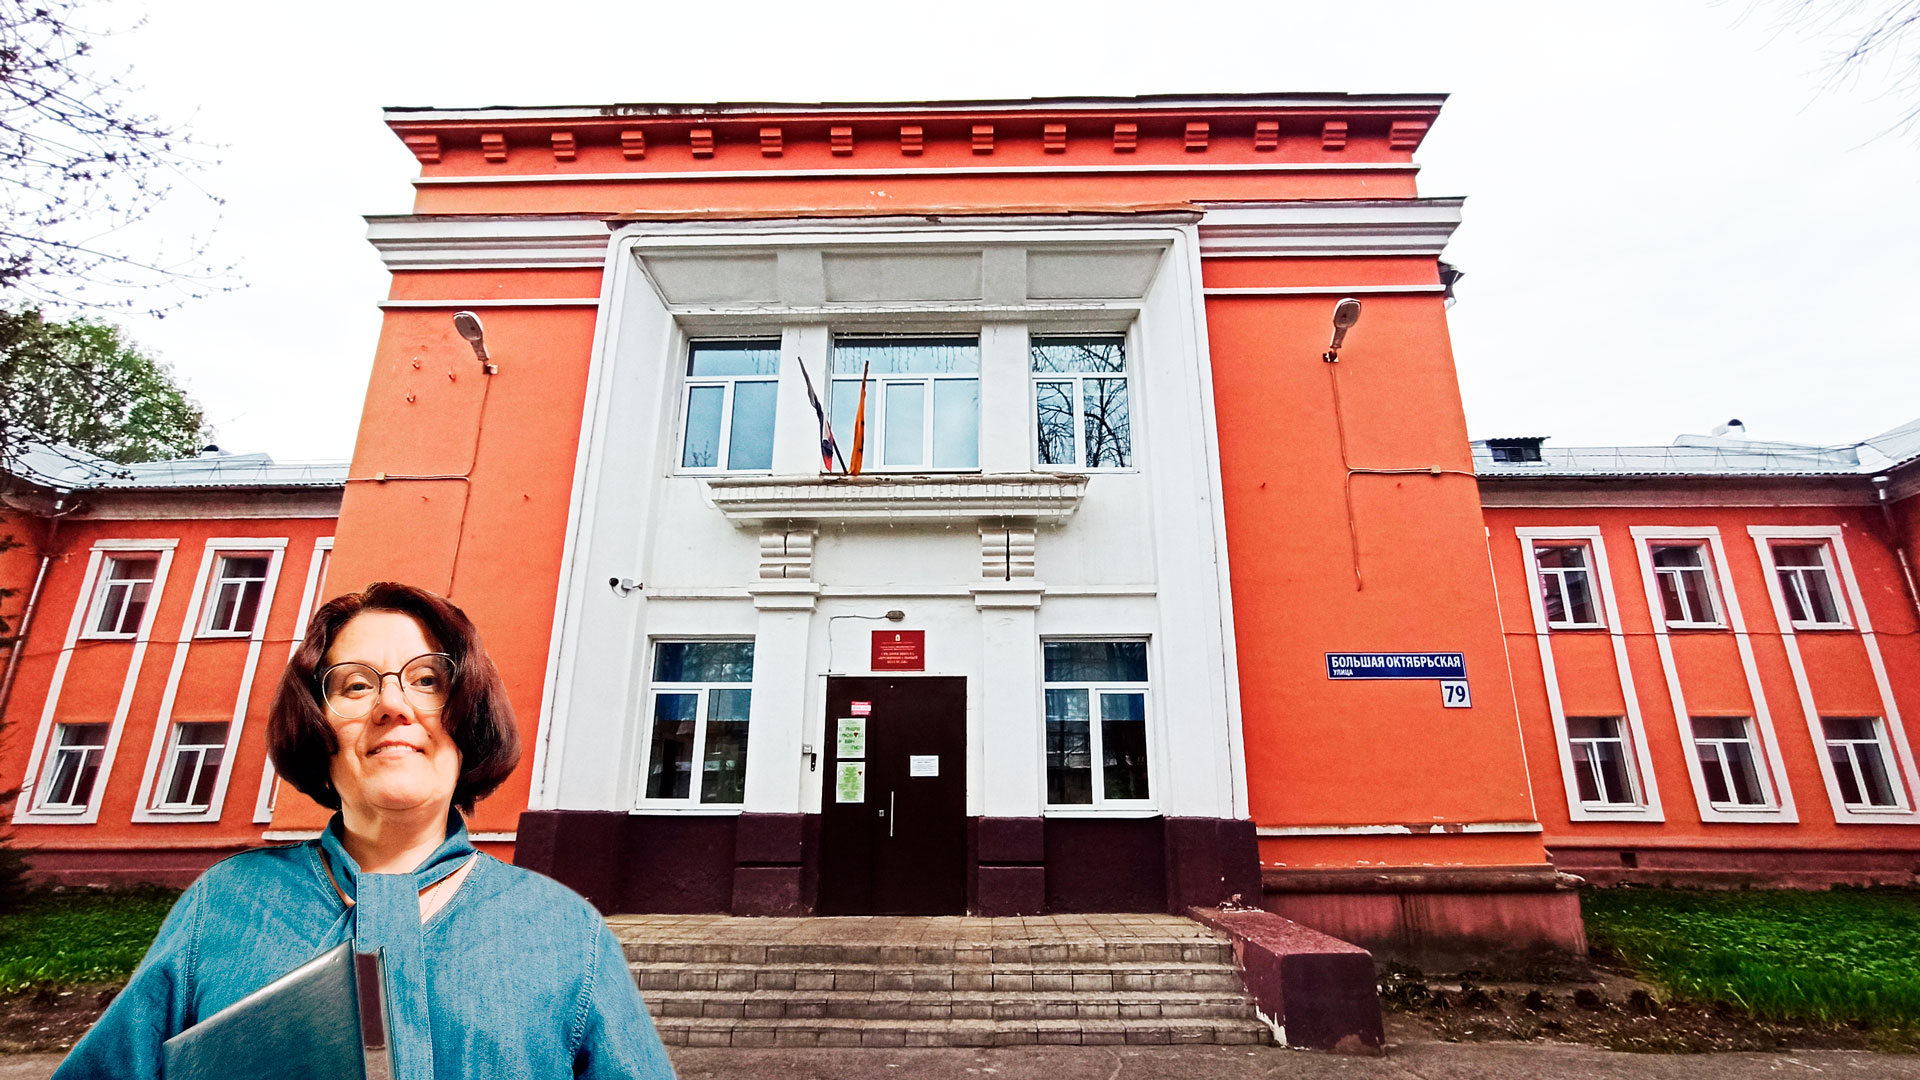 Провинциальный колледж Ярославль: центральный вход в здание школьной организации.